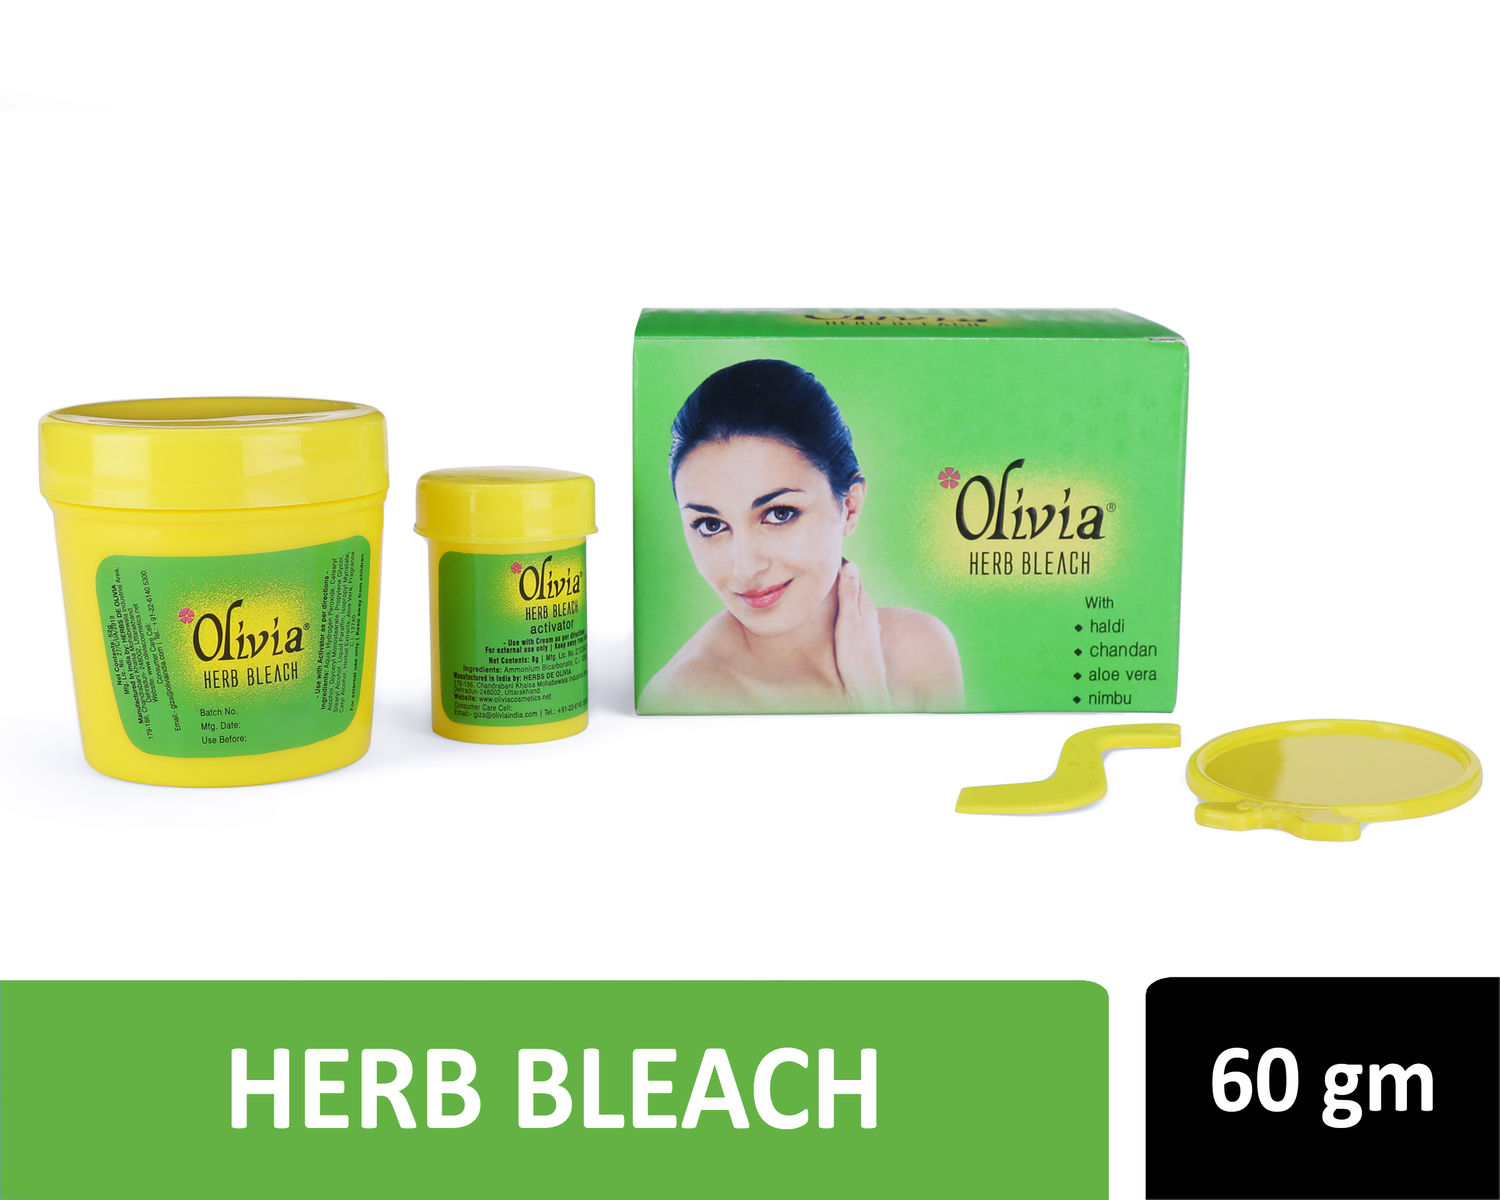 Buy Olivia Herb Bleach (60 g) - Purplle